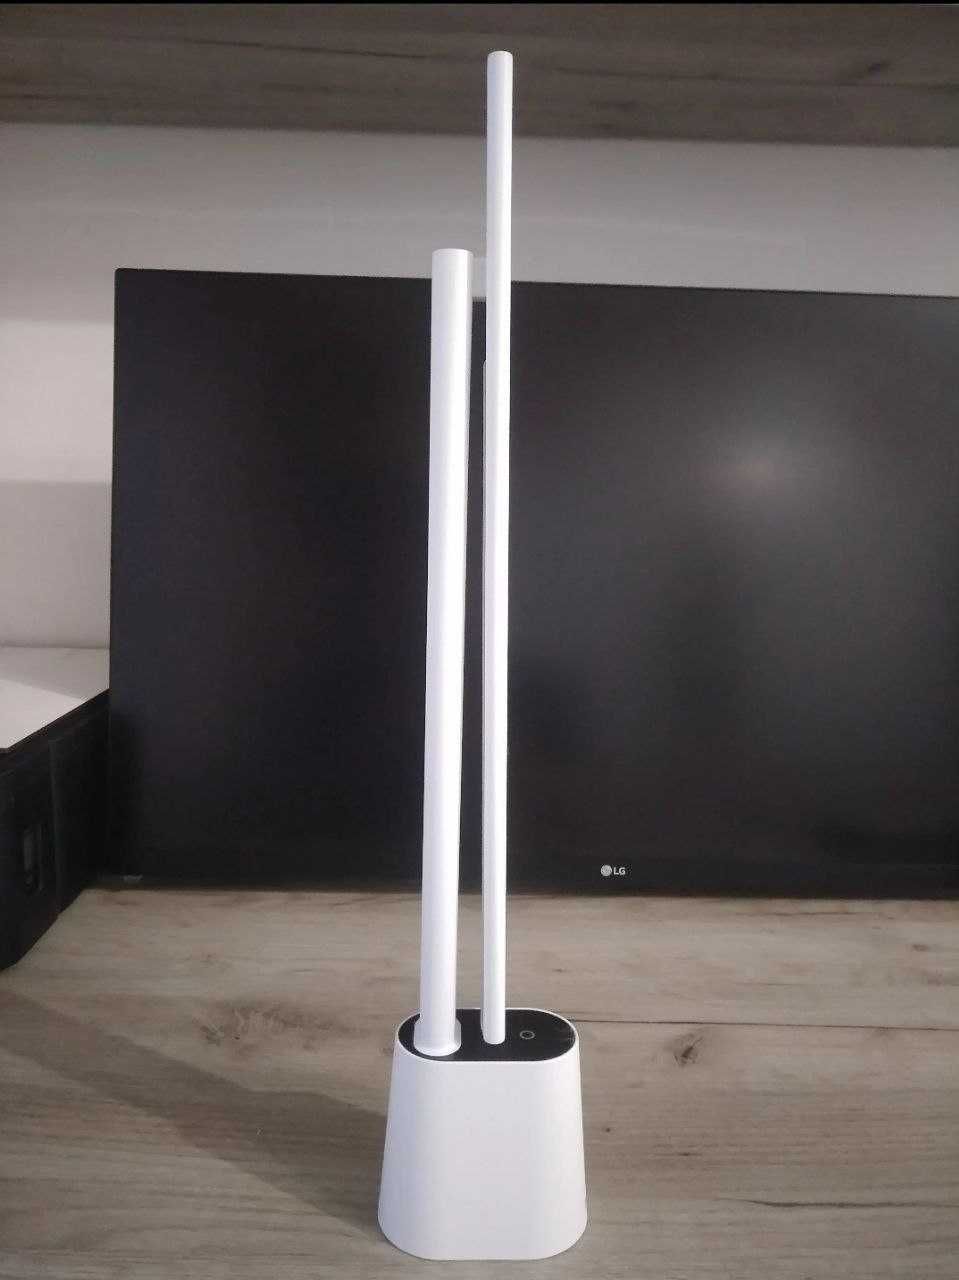 Лампа Baseus, настольная, аккумуляторная, портативная Led лампа